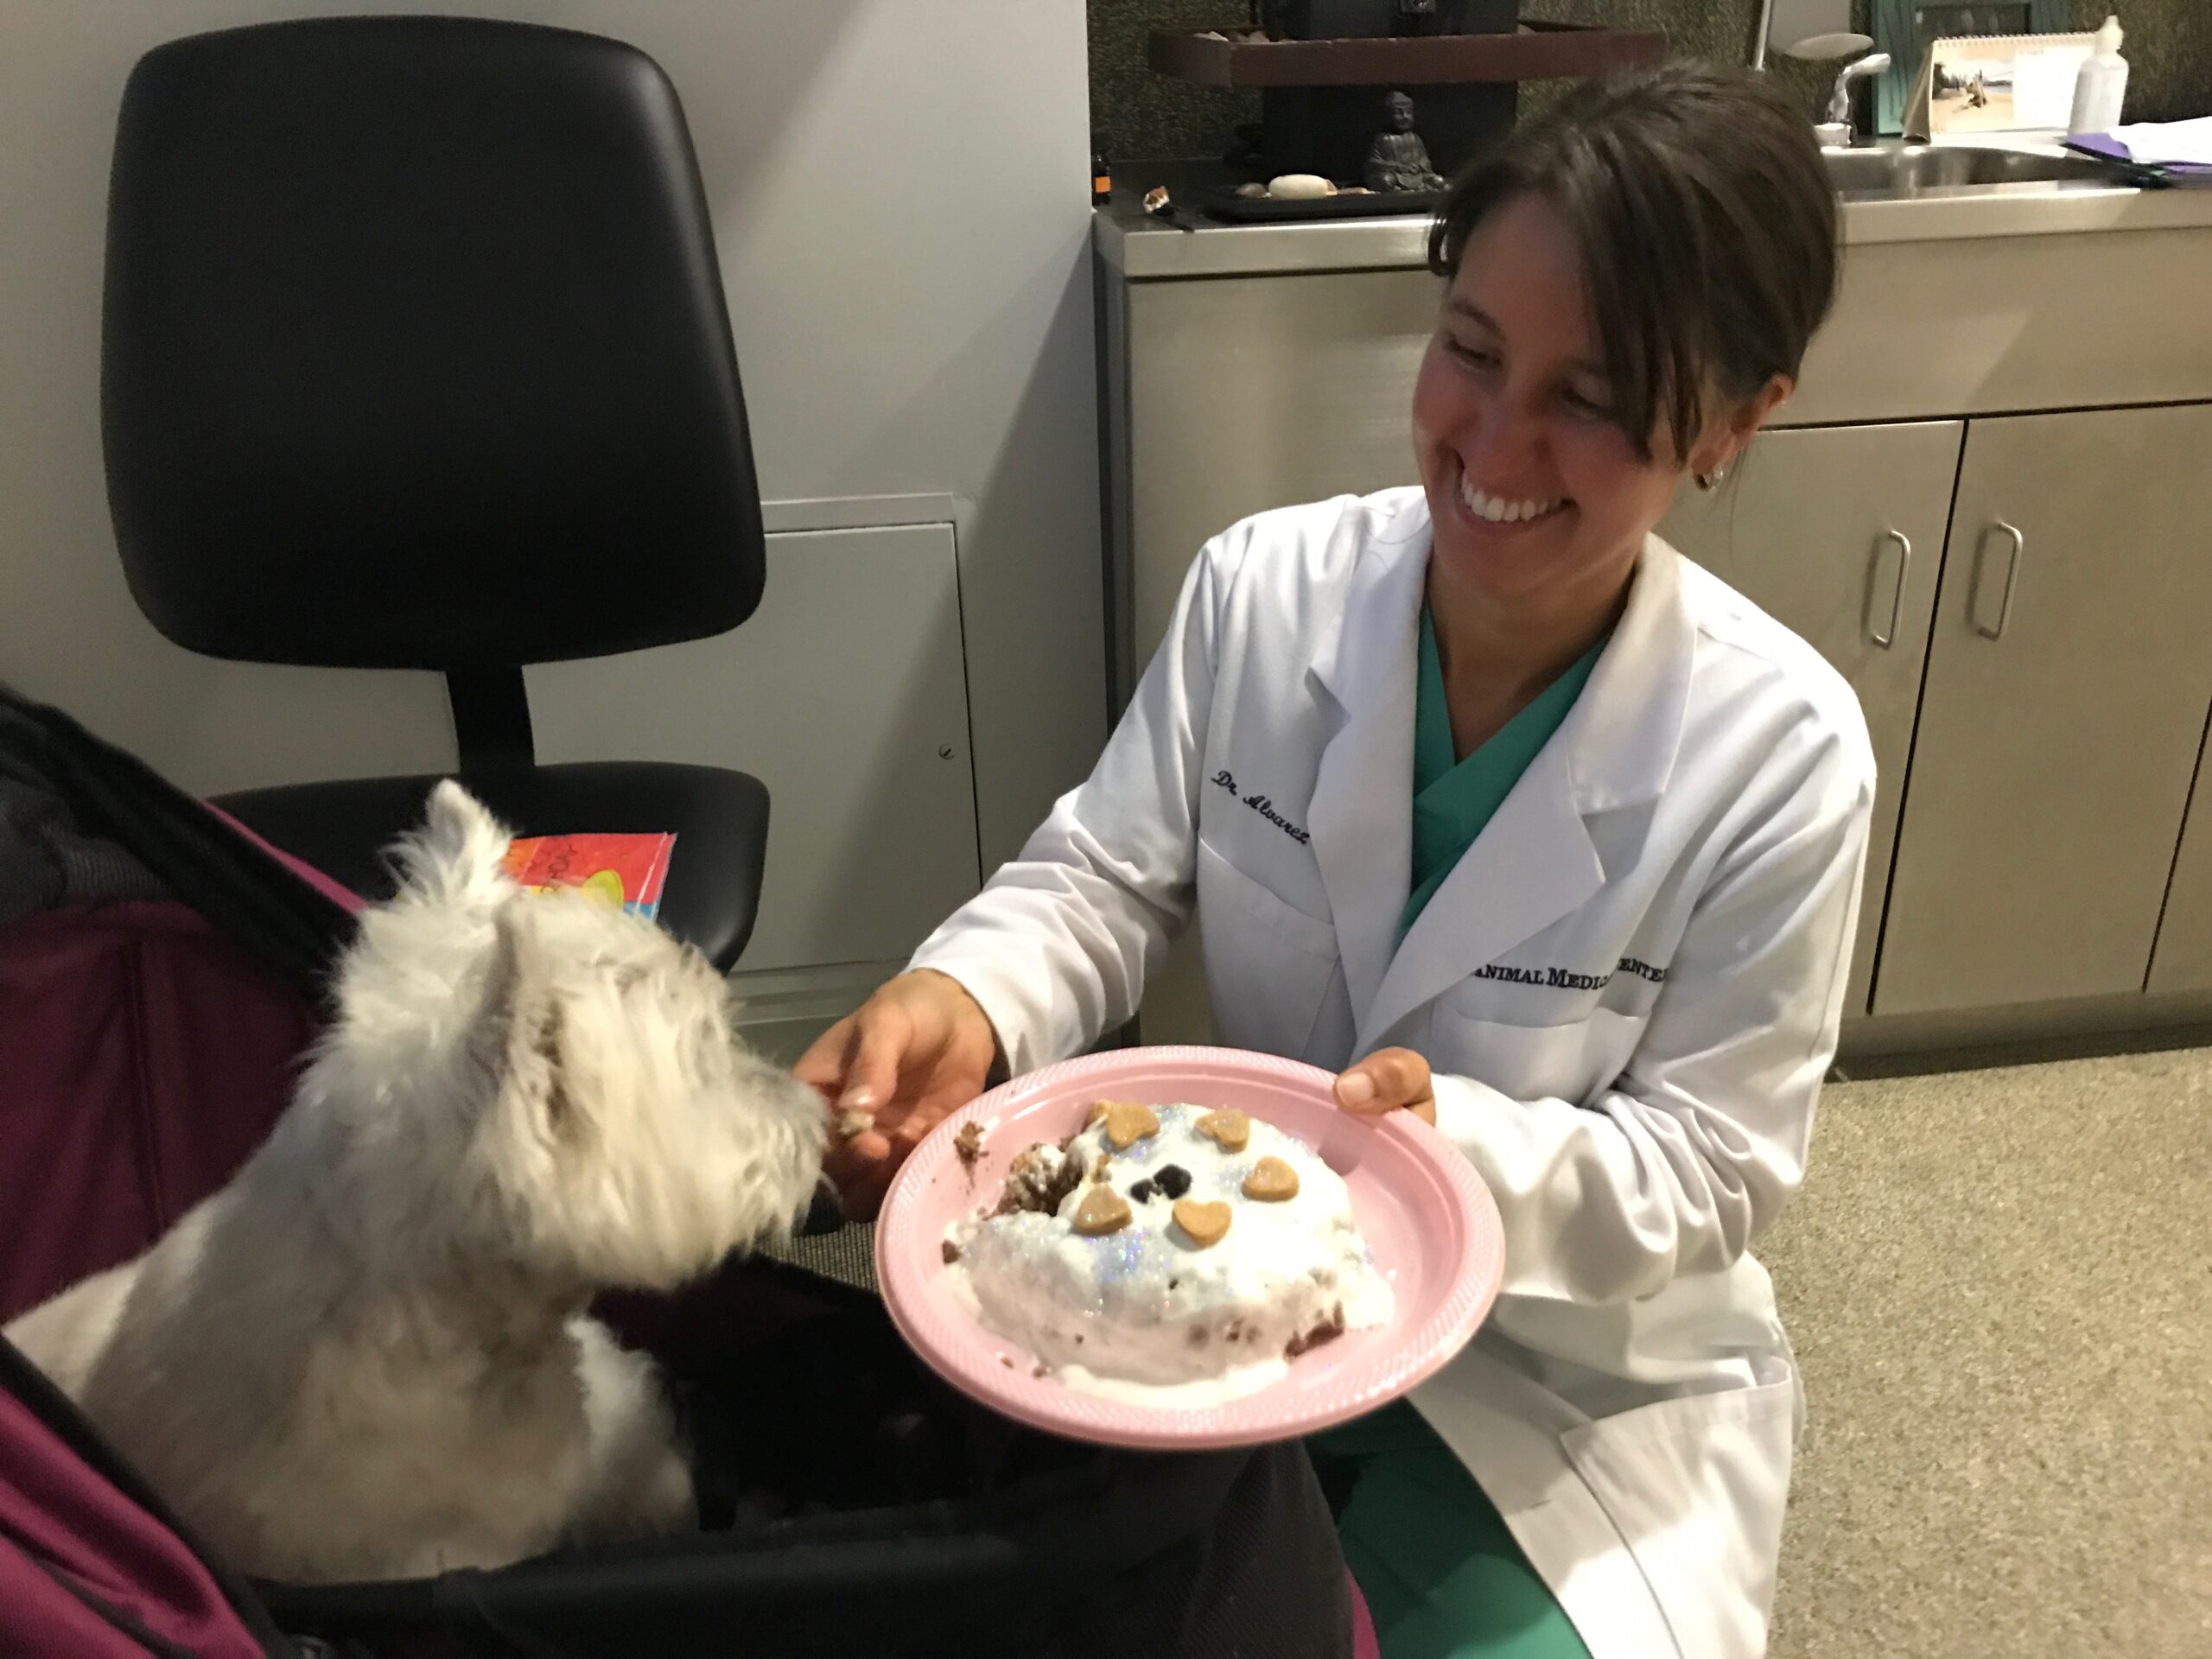 AMC's Dr. Leilani Alvarez feeds cake to a small white dog